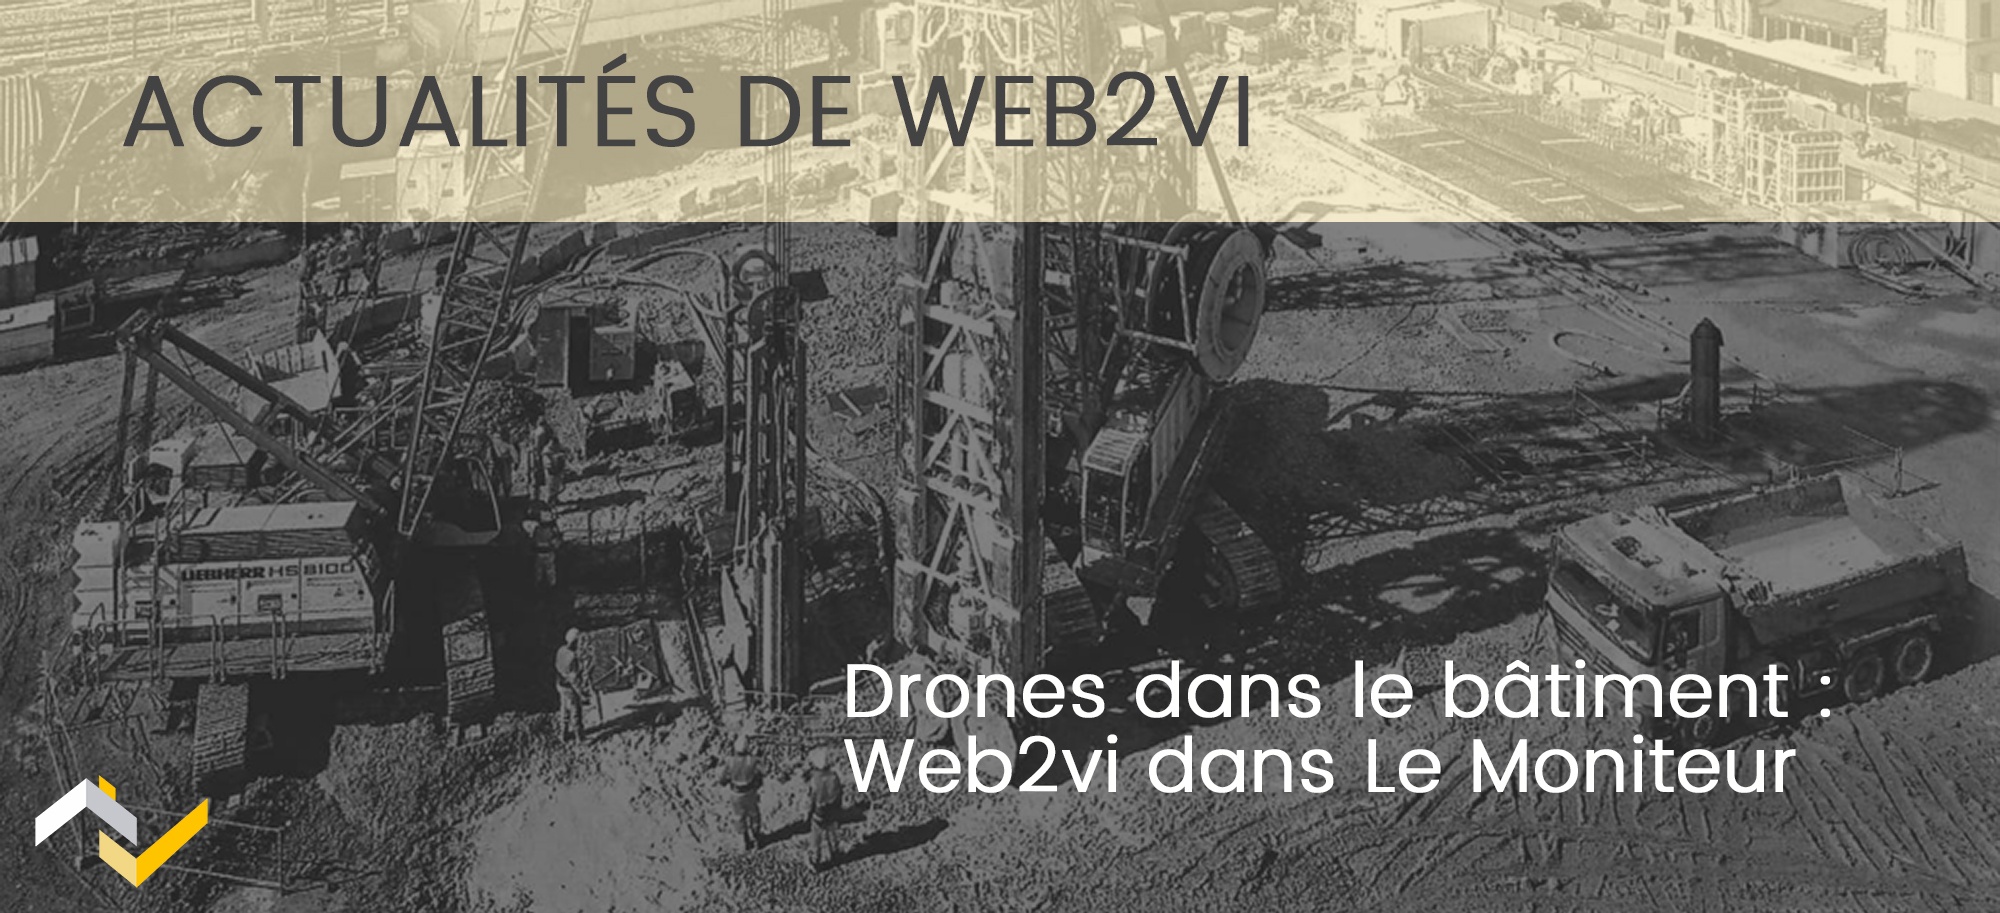 Drones dans le bâtiment : on parle de Web2vi dans Le Moniteur